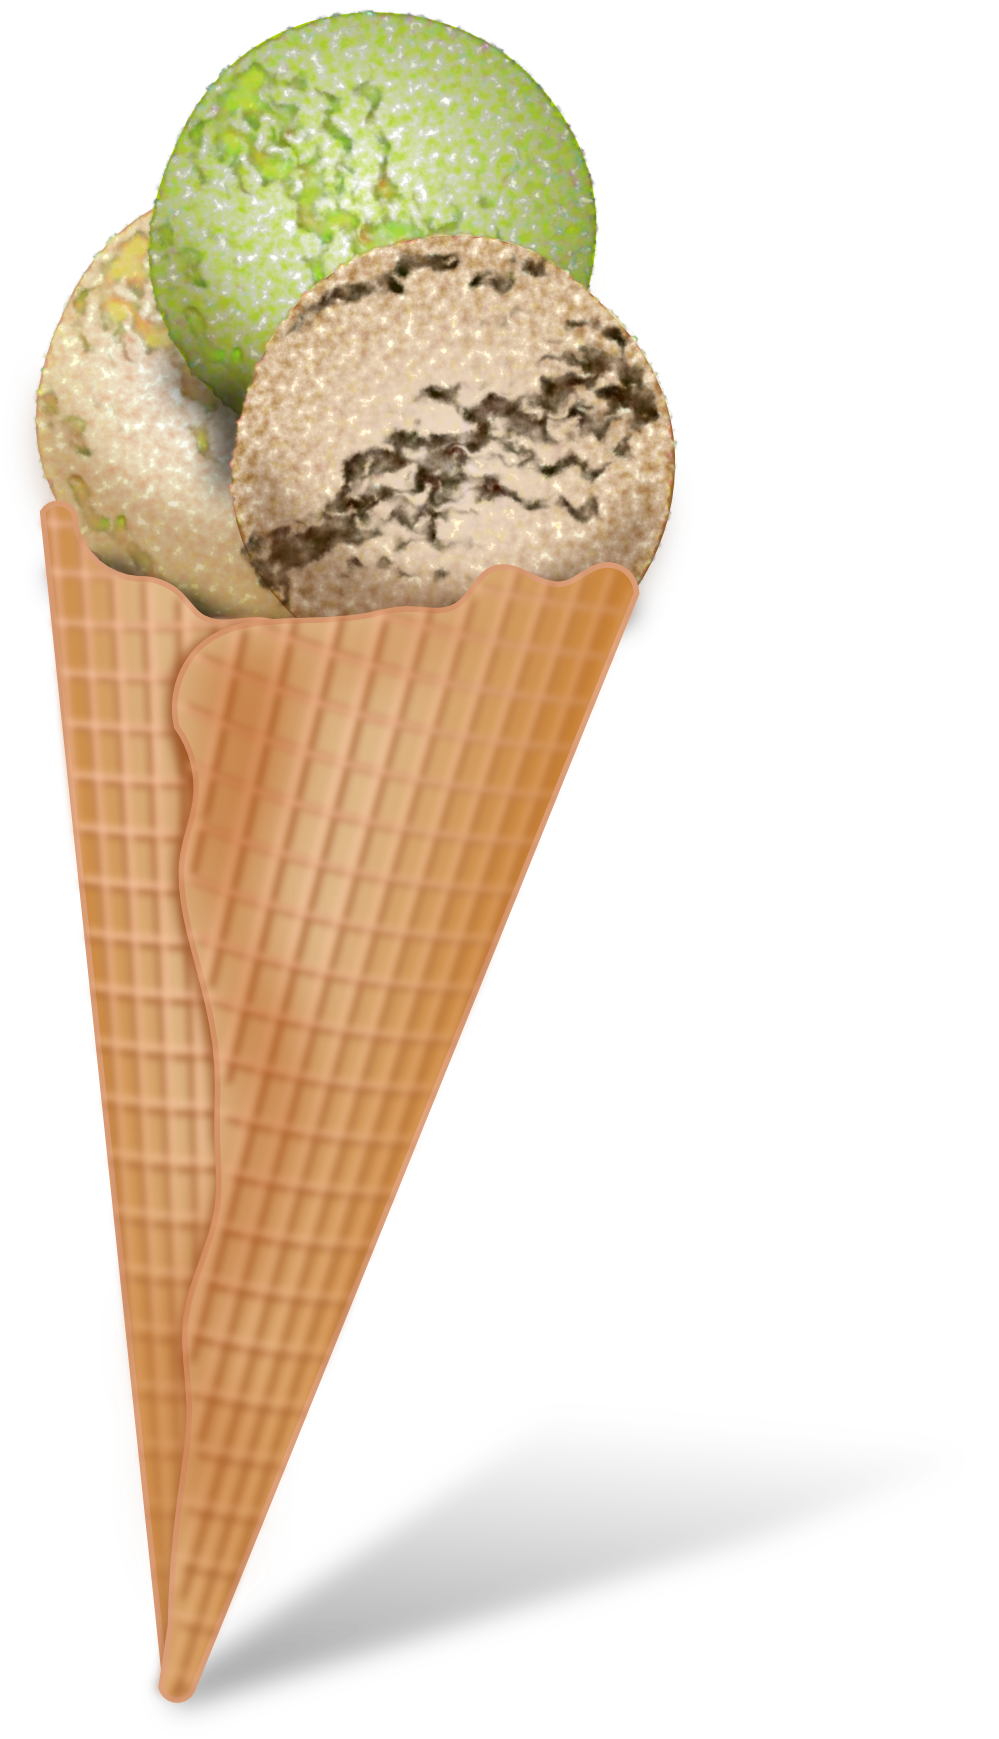 Free ice cream cone clip art 2